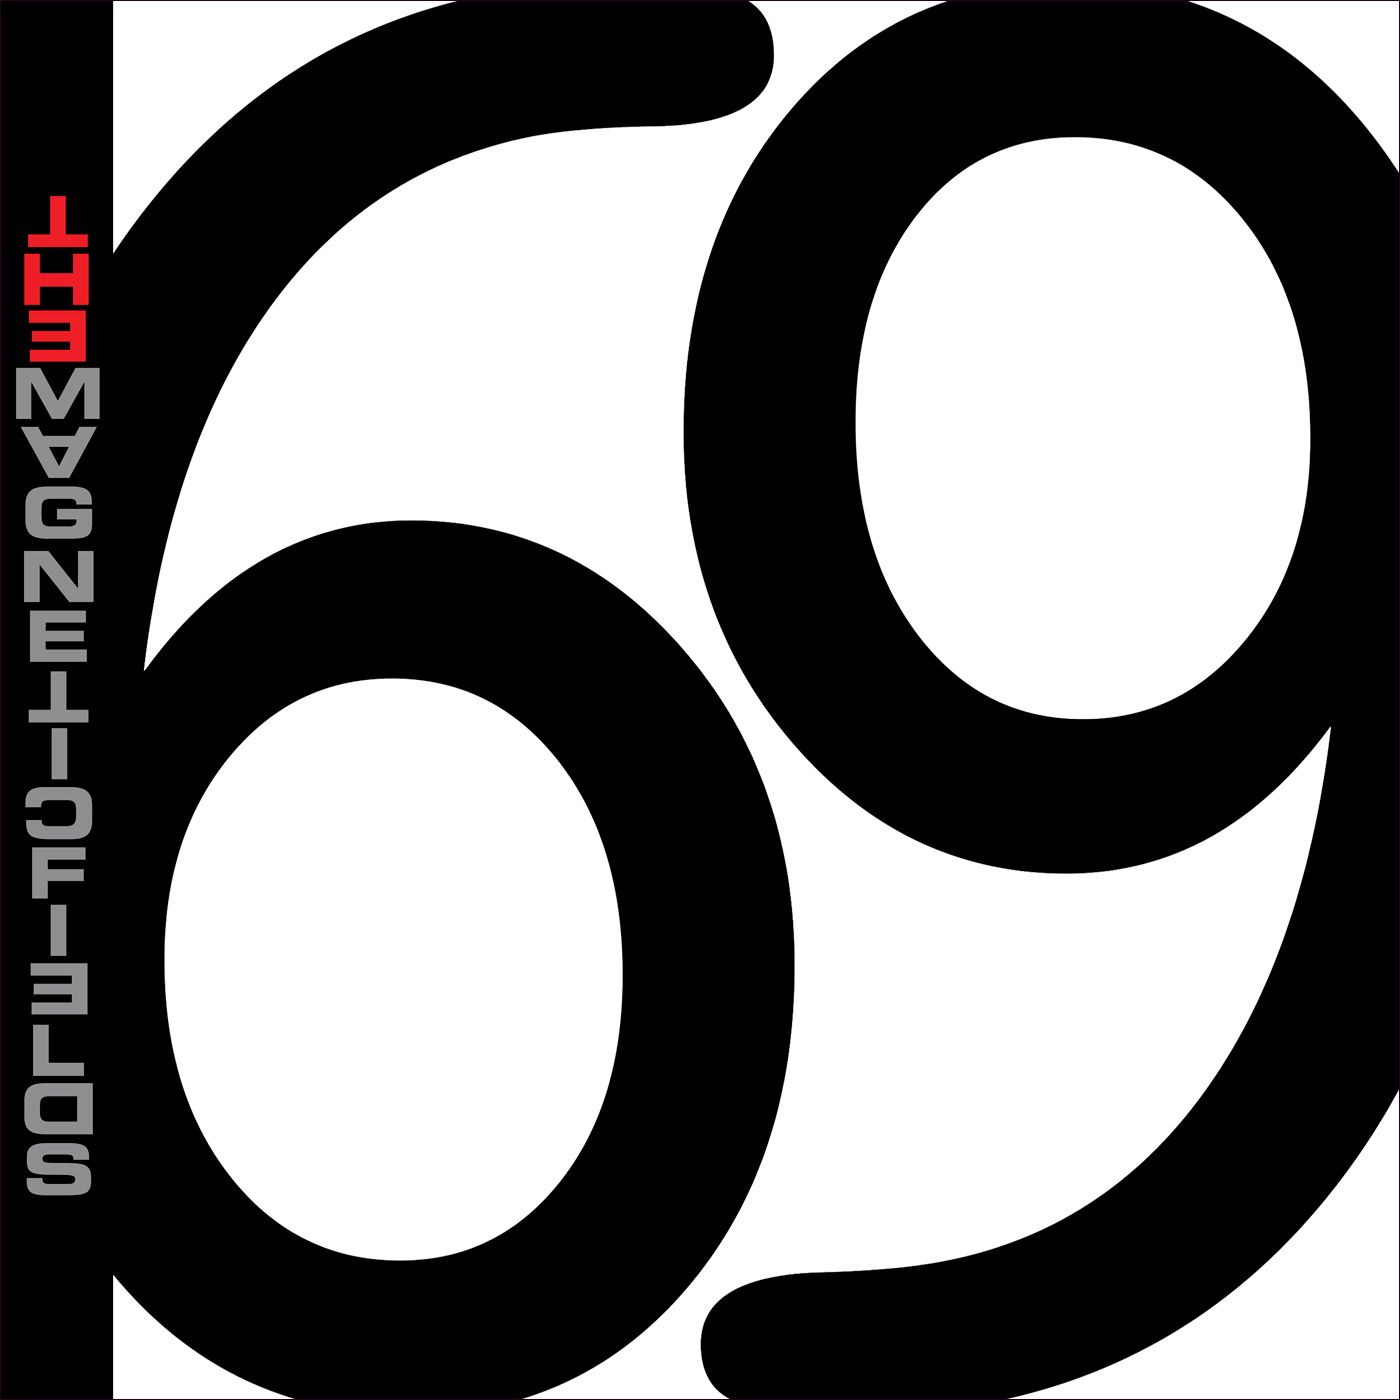 Magnetic Fields "69 Love Songs" 25th 6xlp